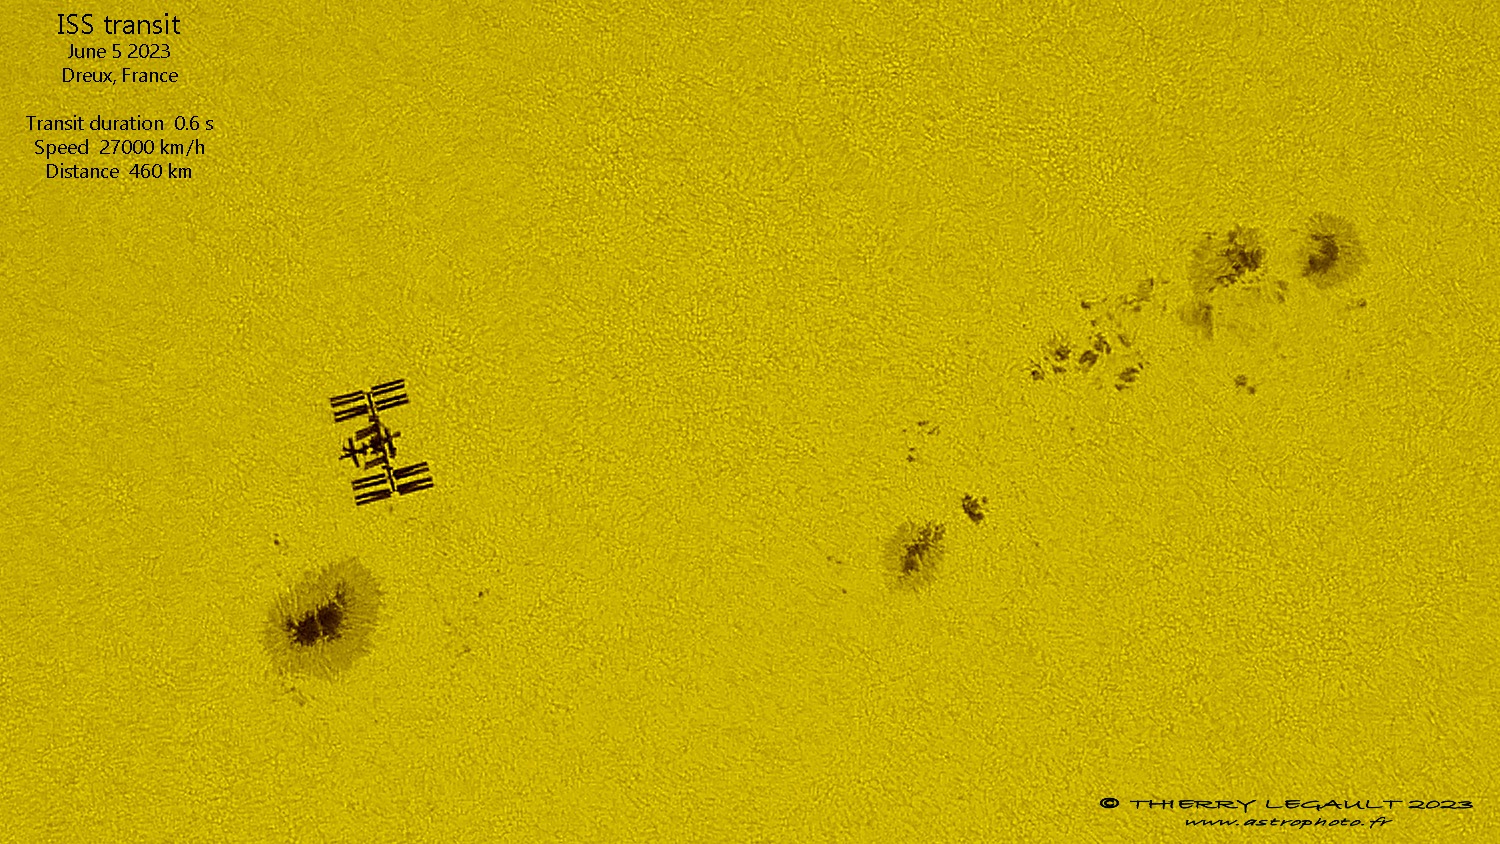 Tranzyt ISS na tle tarczy słonecznej z 6 czerwca